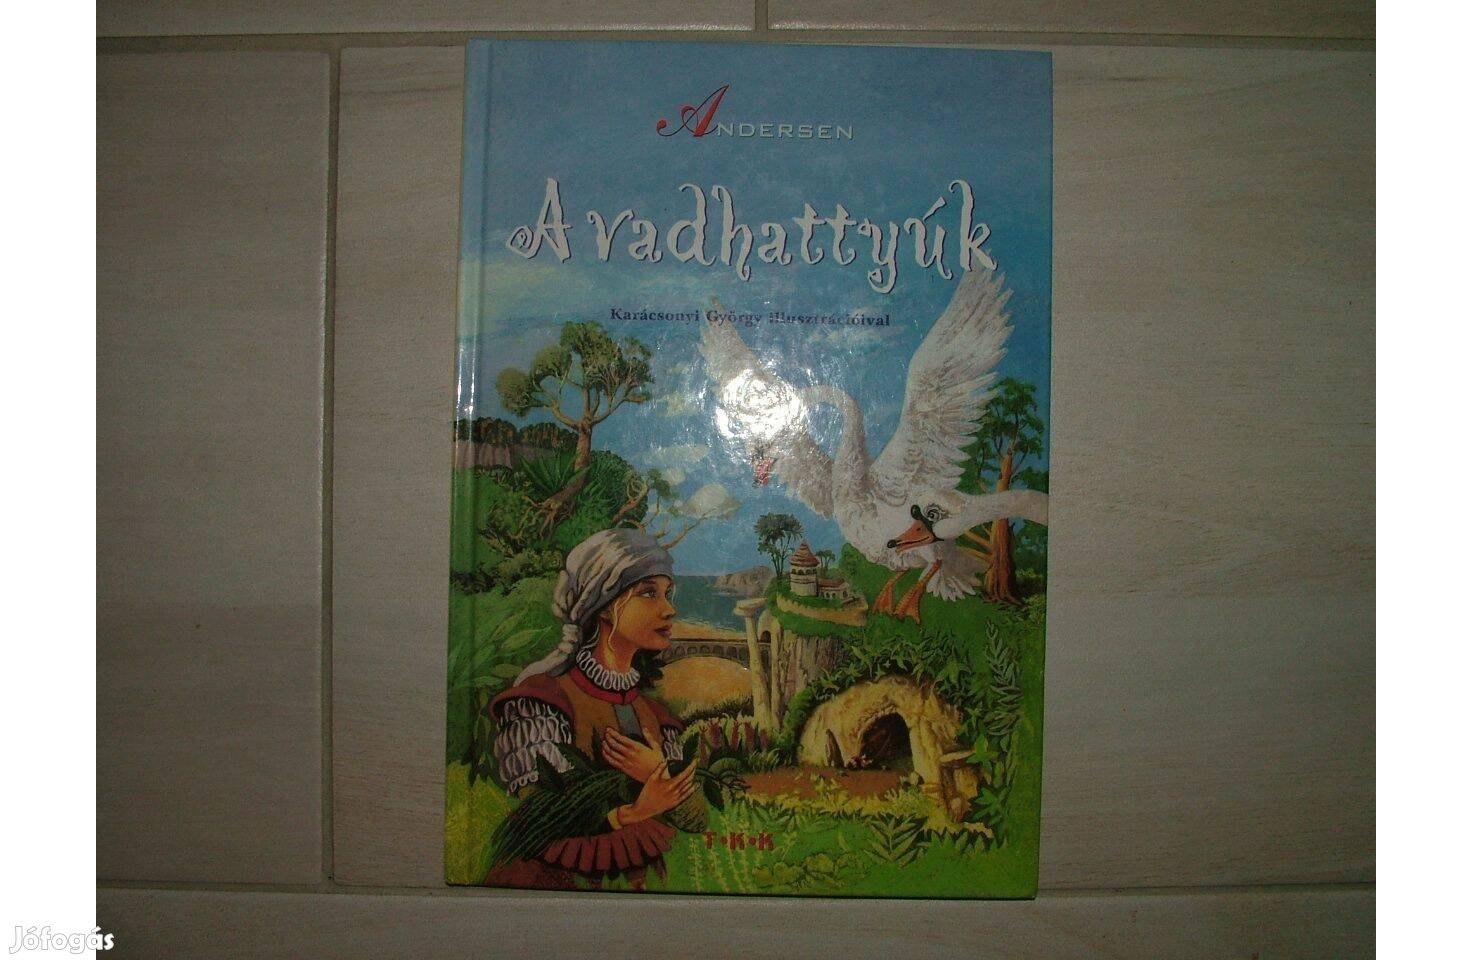 Andersen: A vadhattyúk című mesekönyv